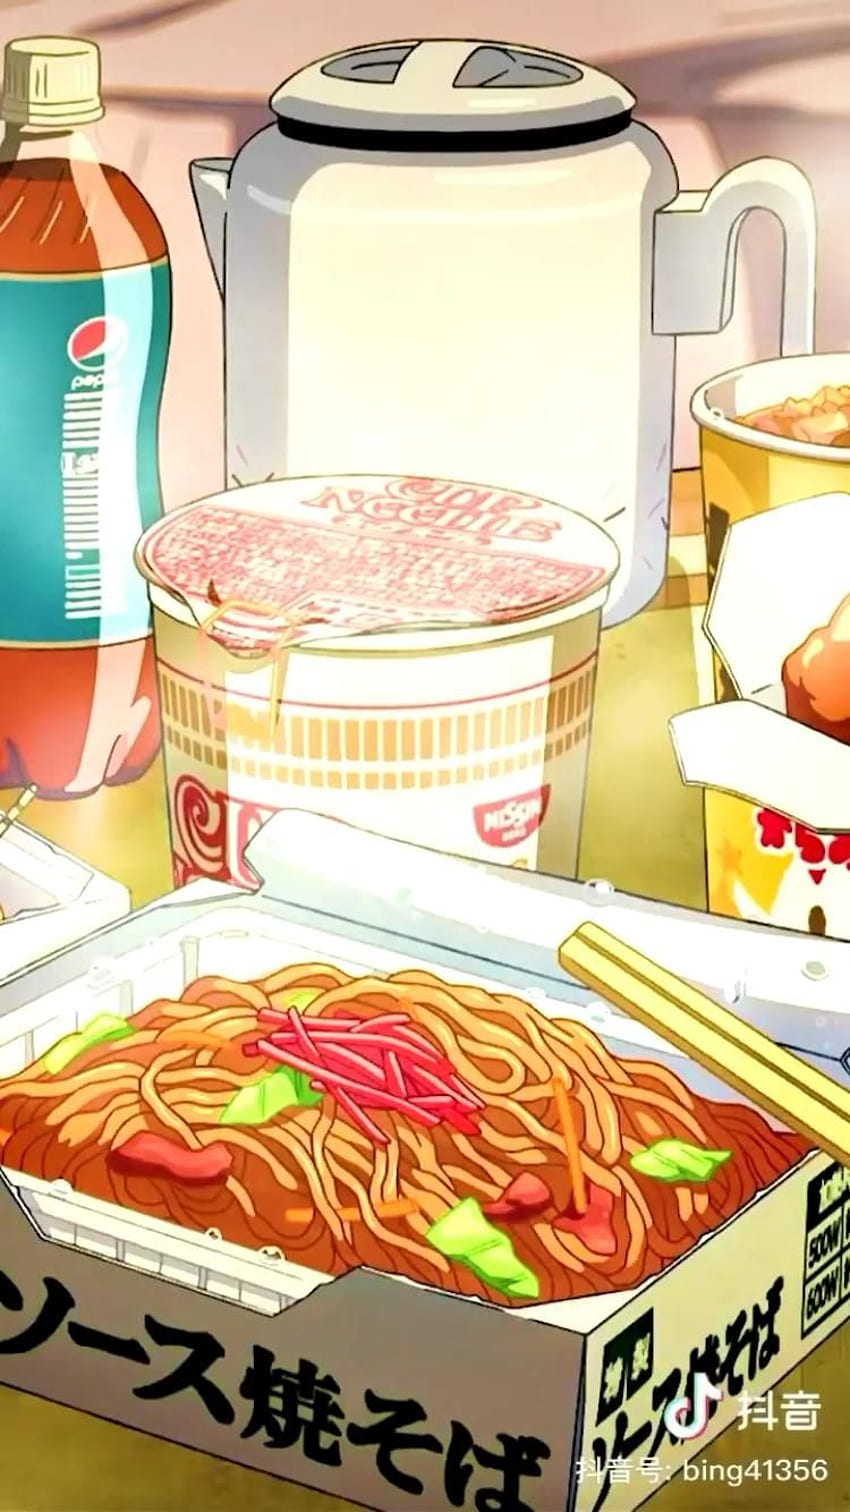 Food illustration anime food and food drawing anime 1055782 on  animeshercom